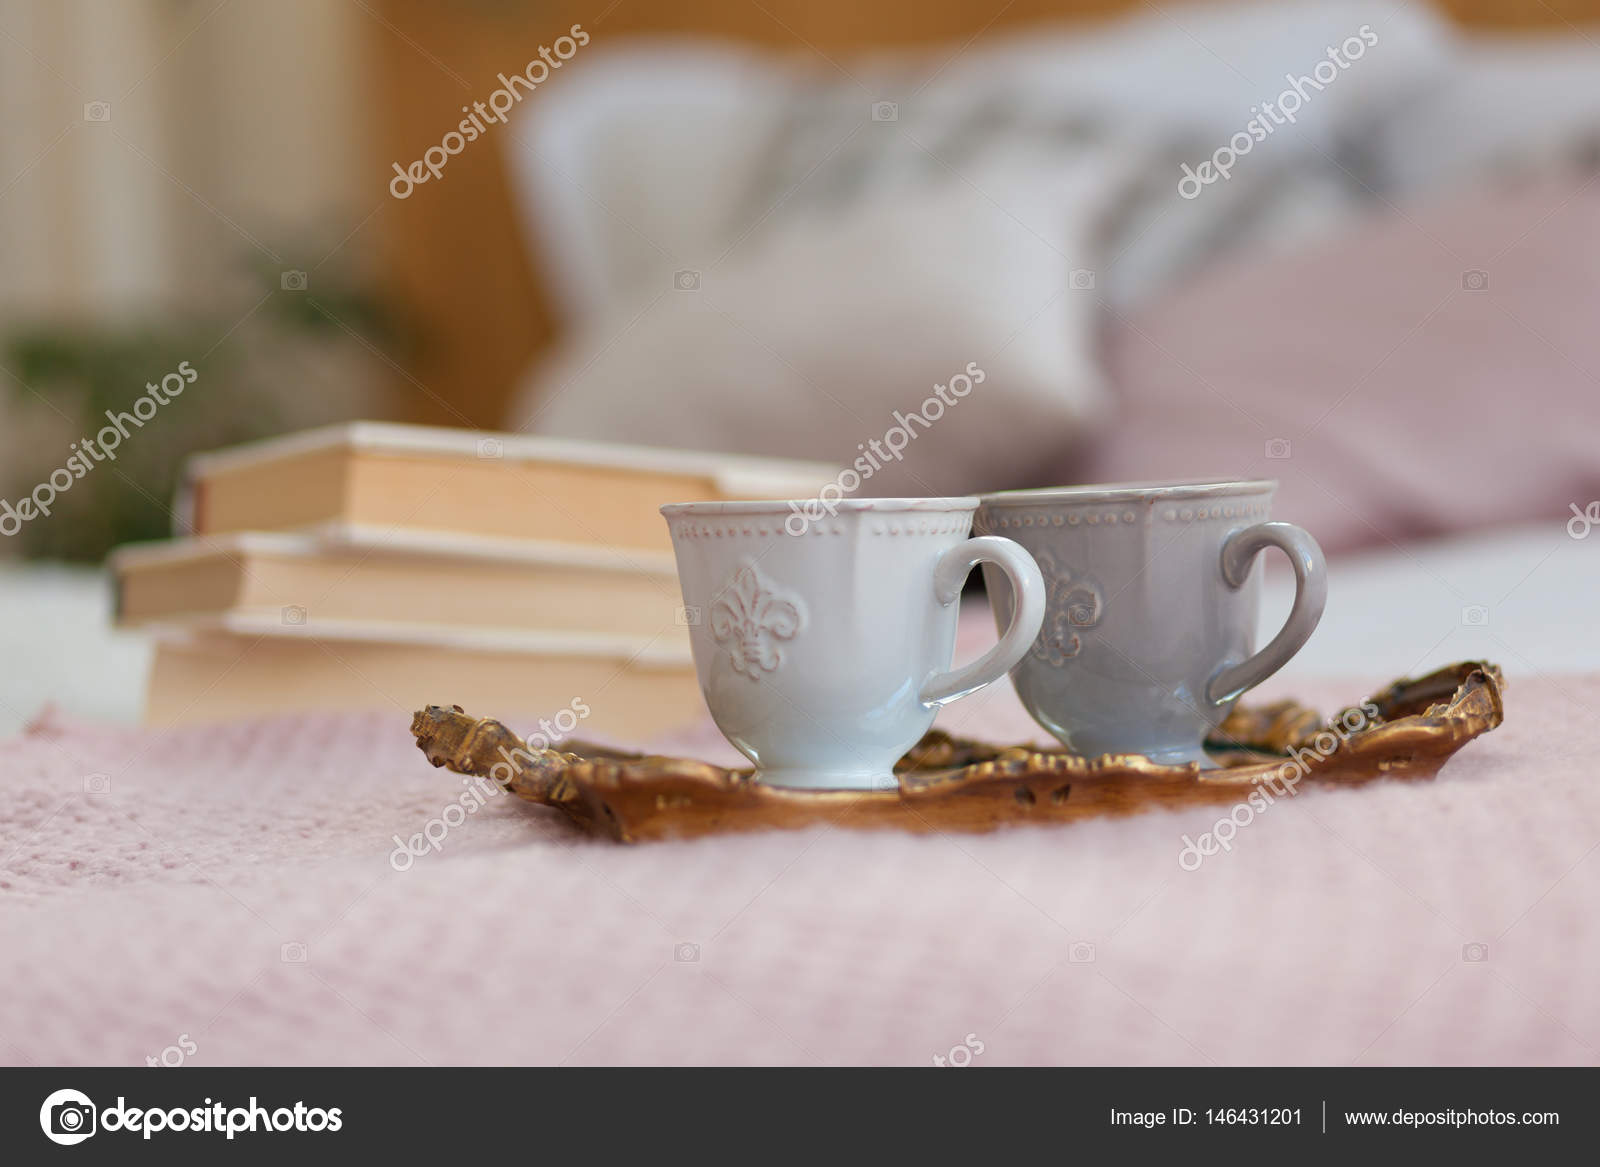 Zwei Tassen Kaffee Auf Einem Tablett Fruhstuck Im Bett Stockfotografie Lizenzfreie Fotos C Polinabelphoto Depositphotos